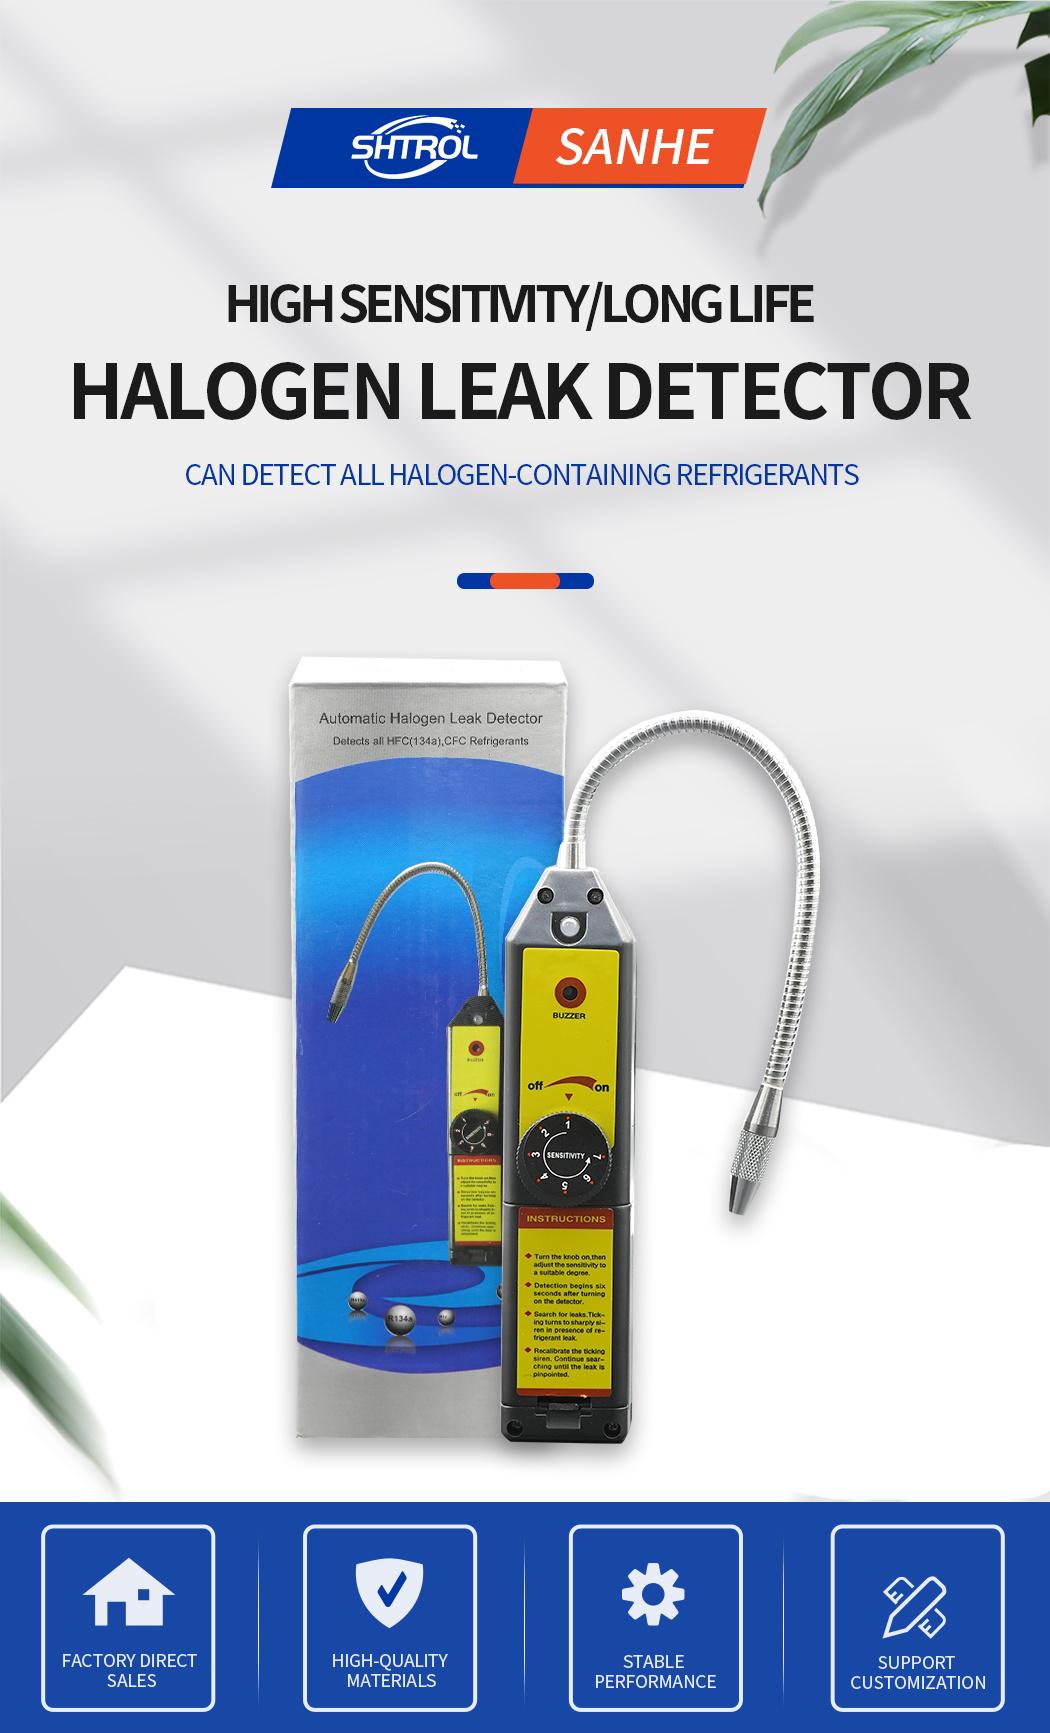 Halogen Leak Detector Wjl-6000 Refrigerant Air Conditioning Leak Detector Car Repair Portable Electronic Leak Detector